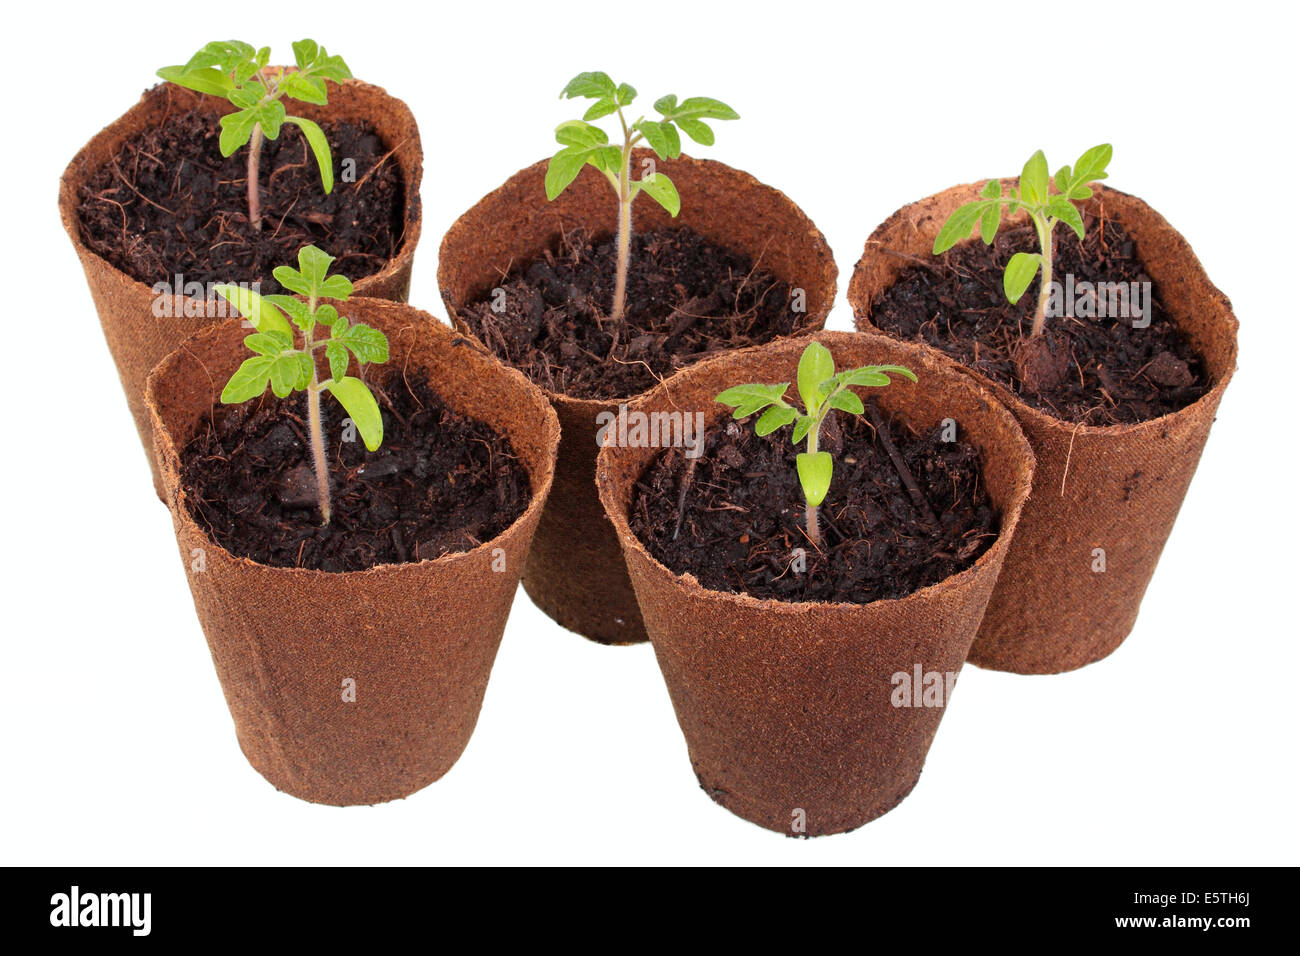 Plants de tomate (Solanum lycopersicum) croissant dans des pots biodégradables Banque D'Images